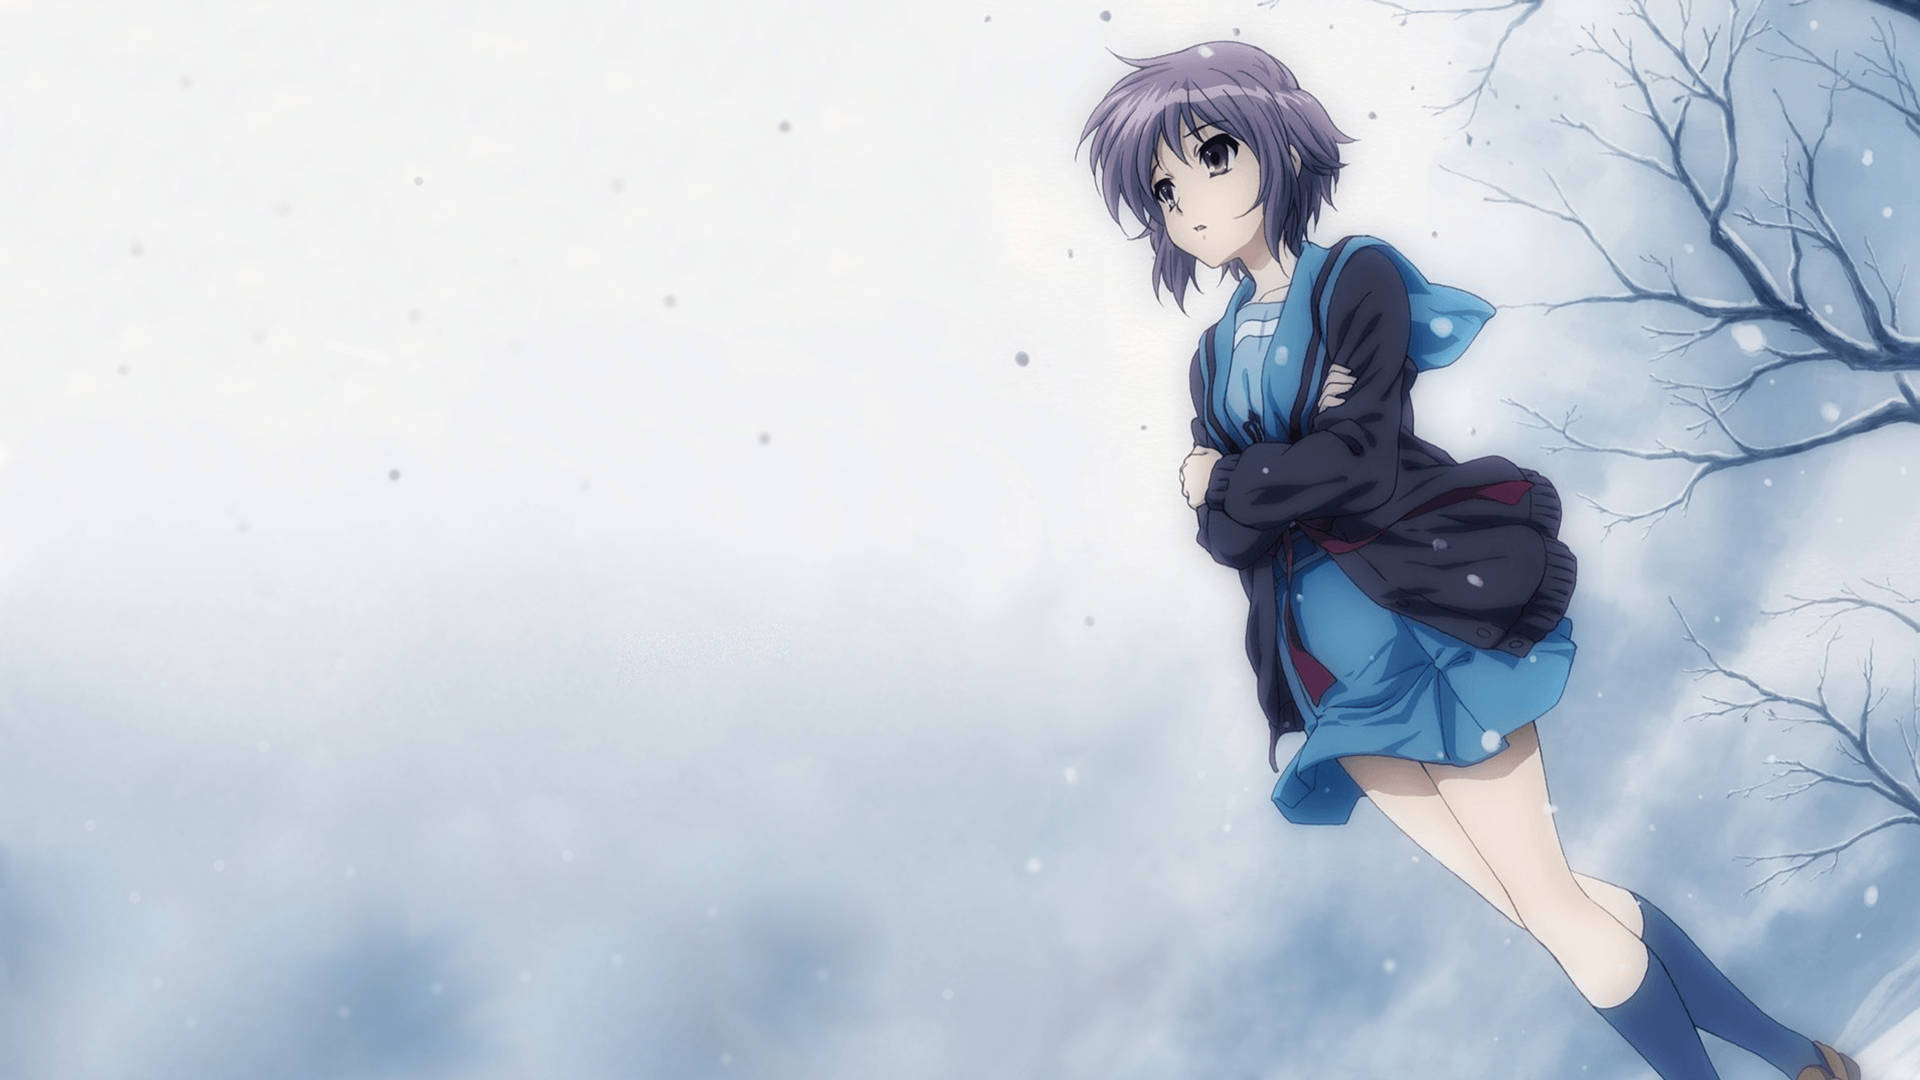 Sad Anime 4k Lonely Girl In Snow Wallpaper